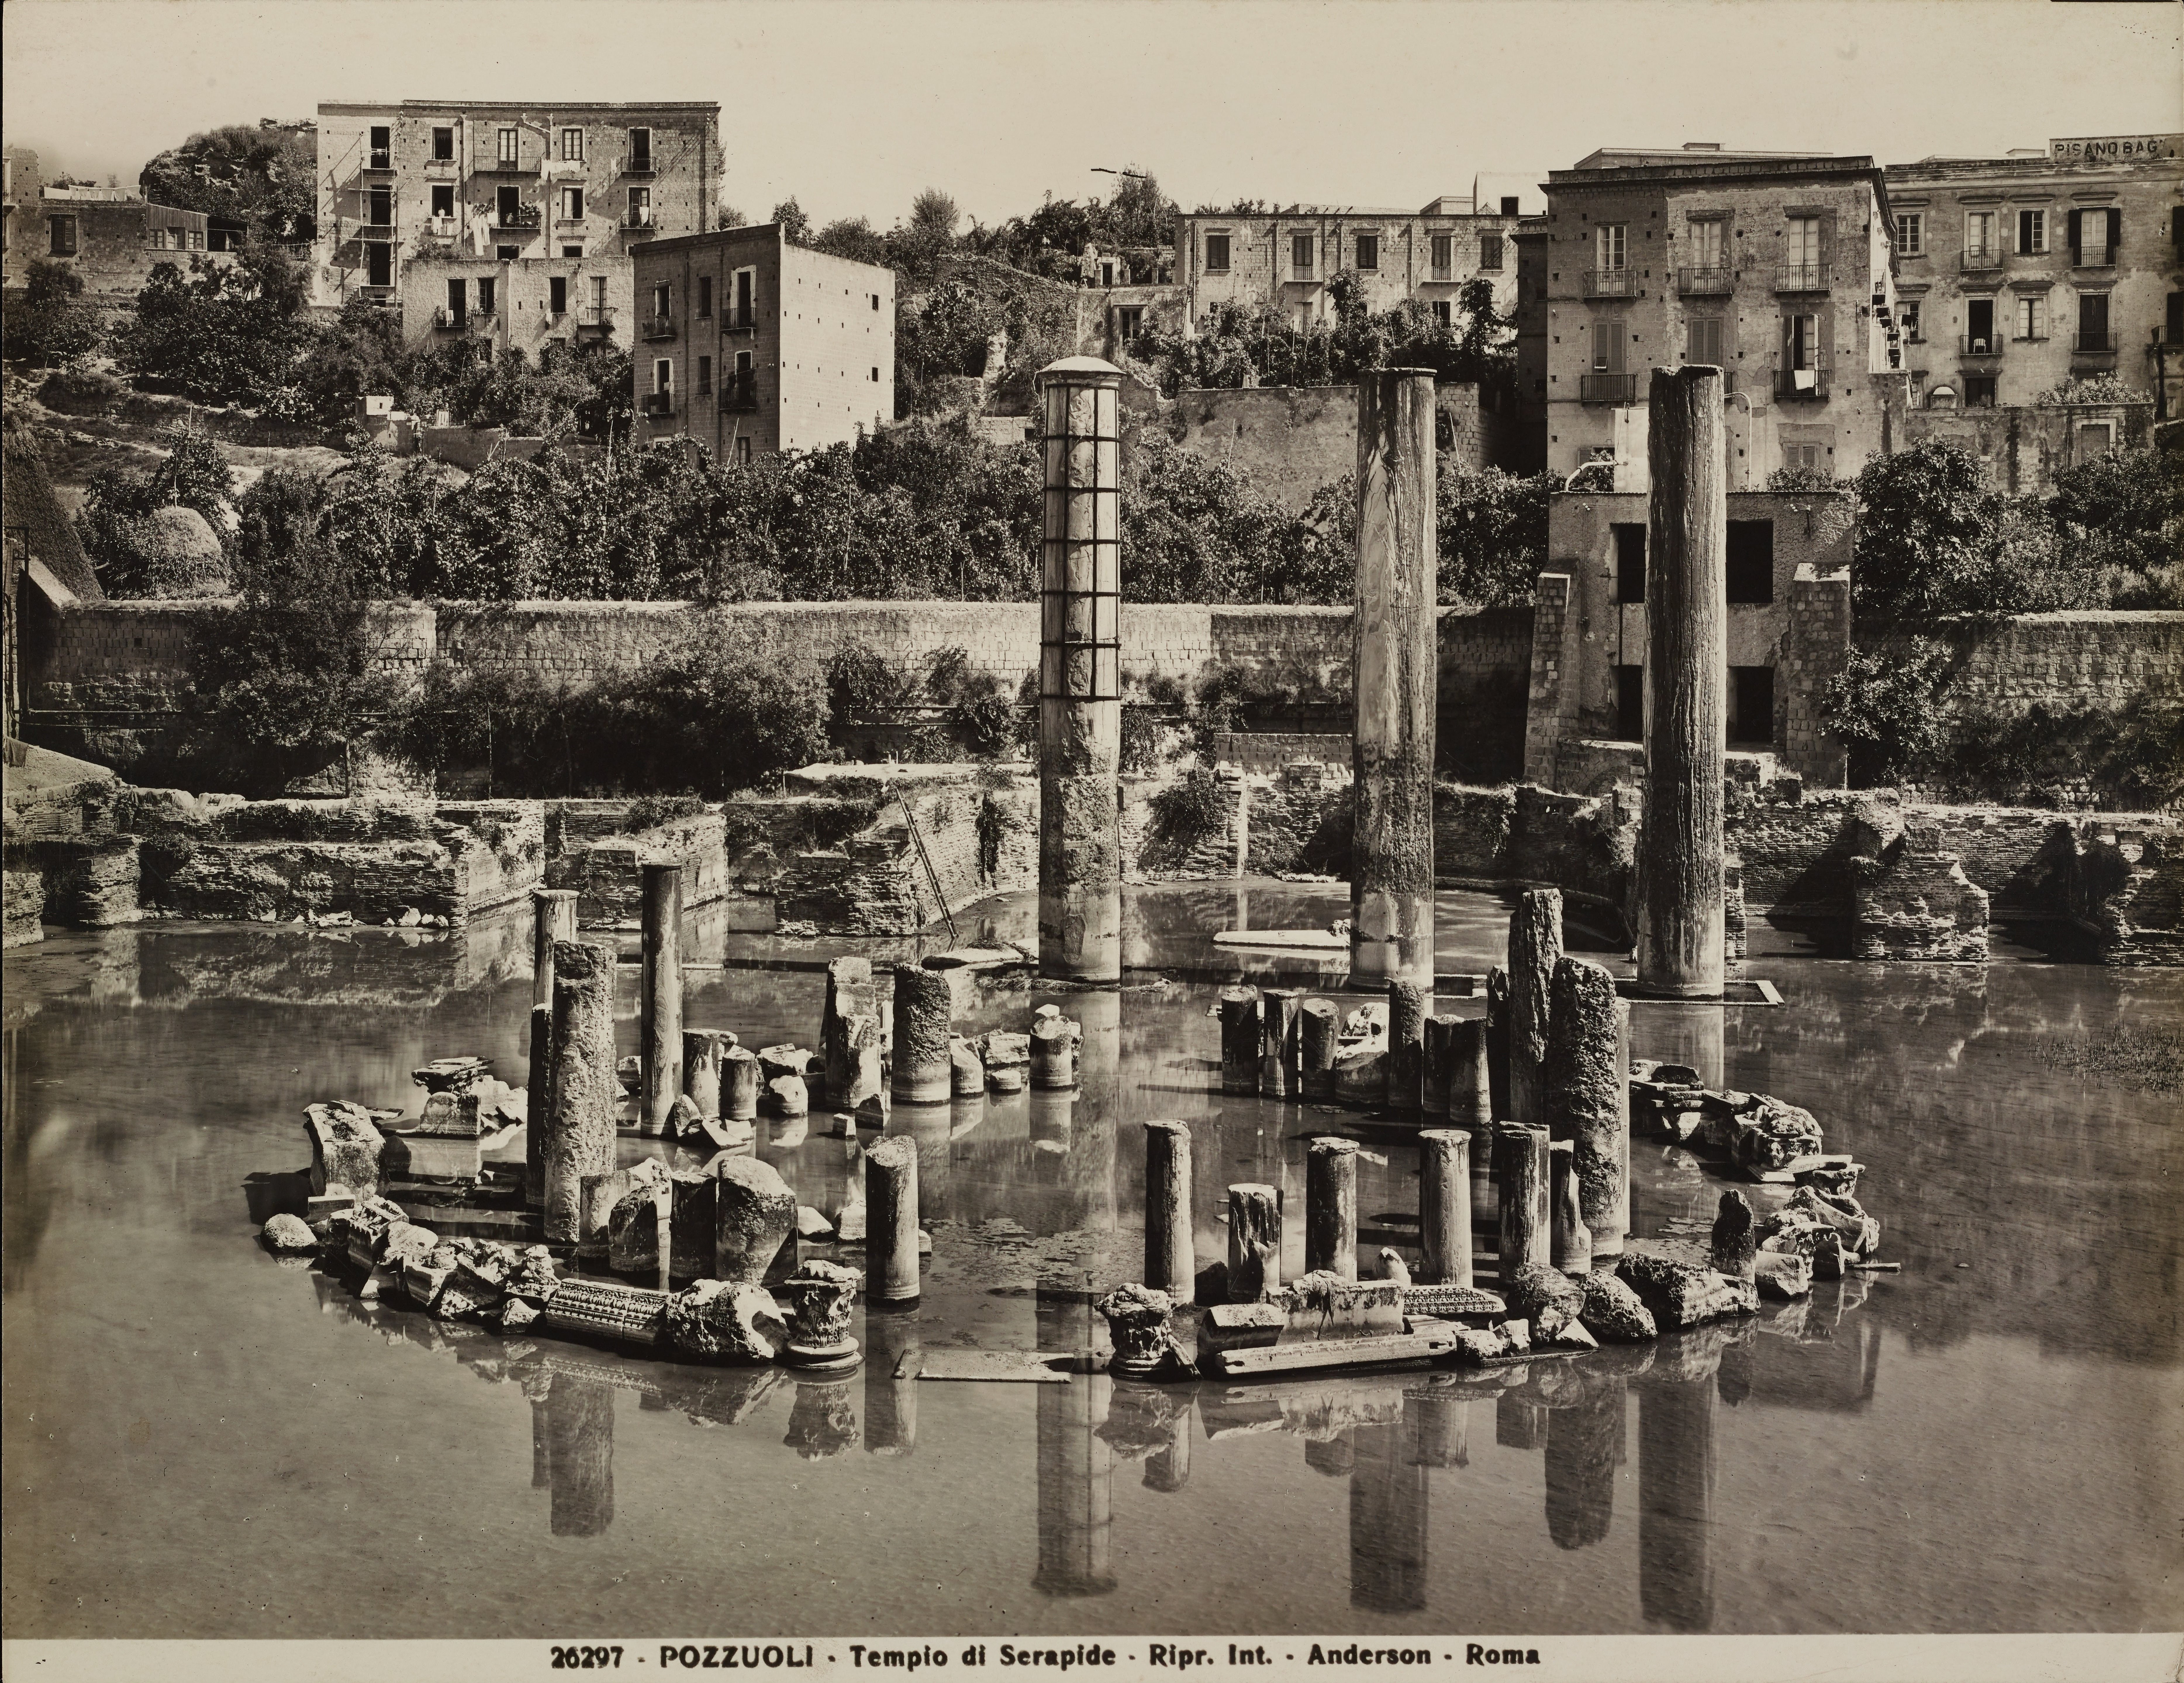 Anderson, Pozzuoli - Tempio di Serapide o Macellum, colonne e frammenti scultorei, 1901-1925, gelatina ai sali d'argento, MPI6014283